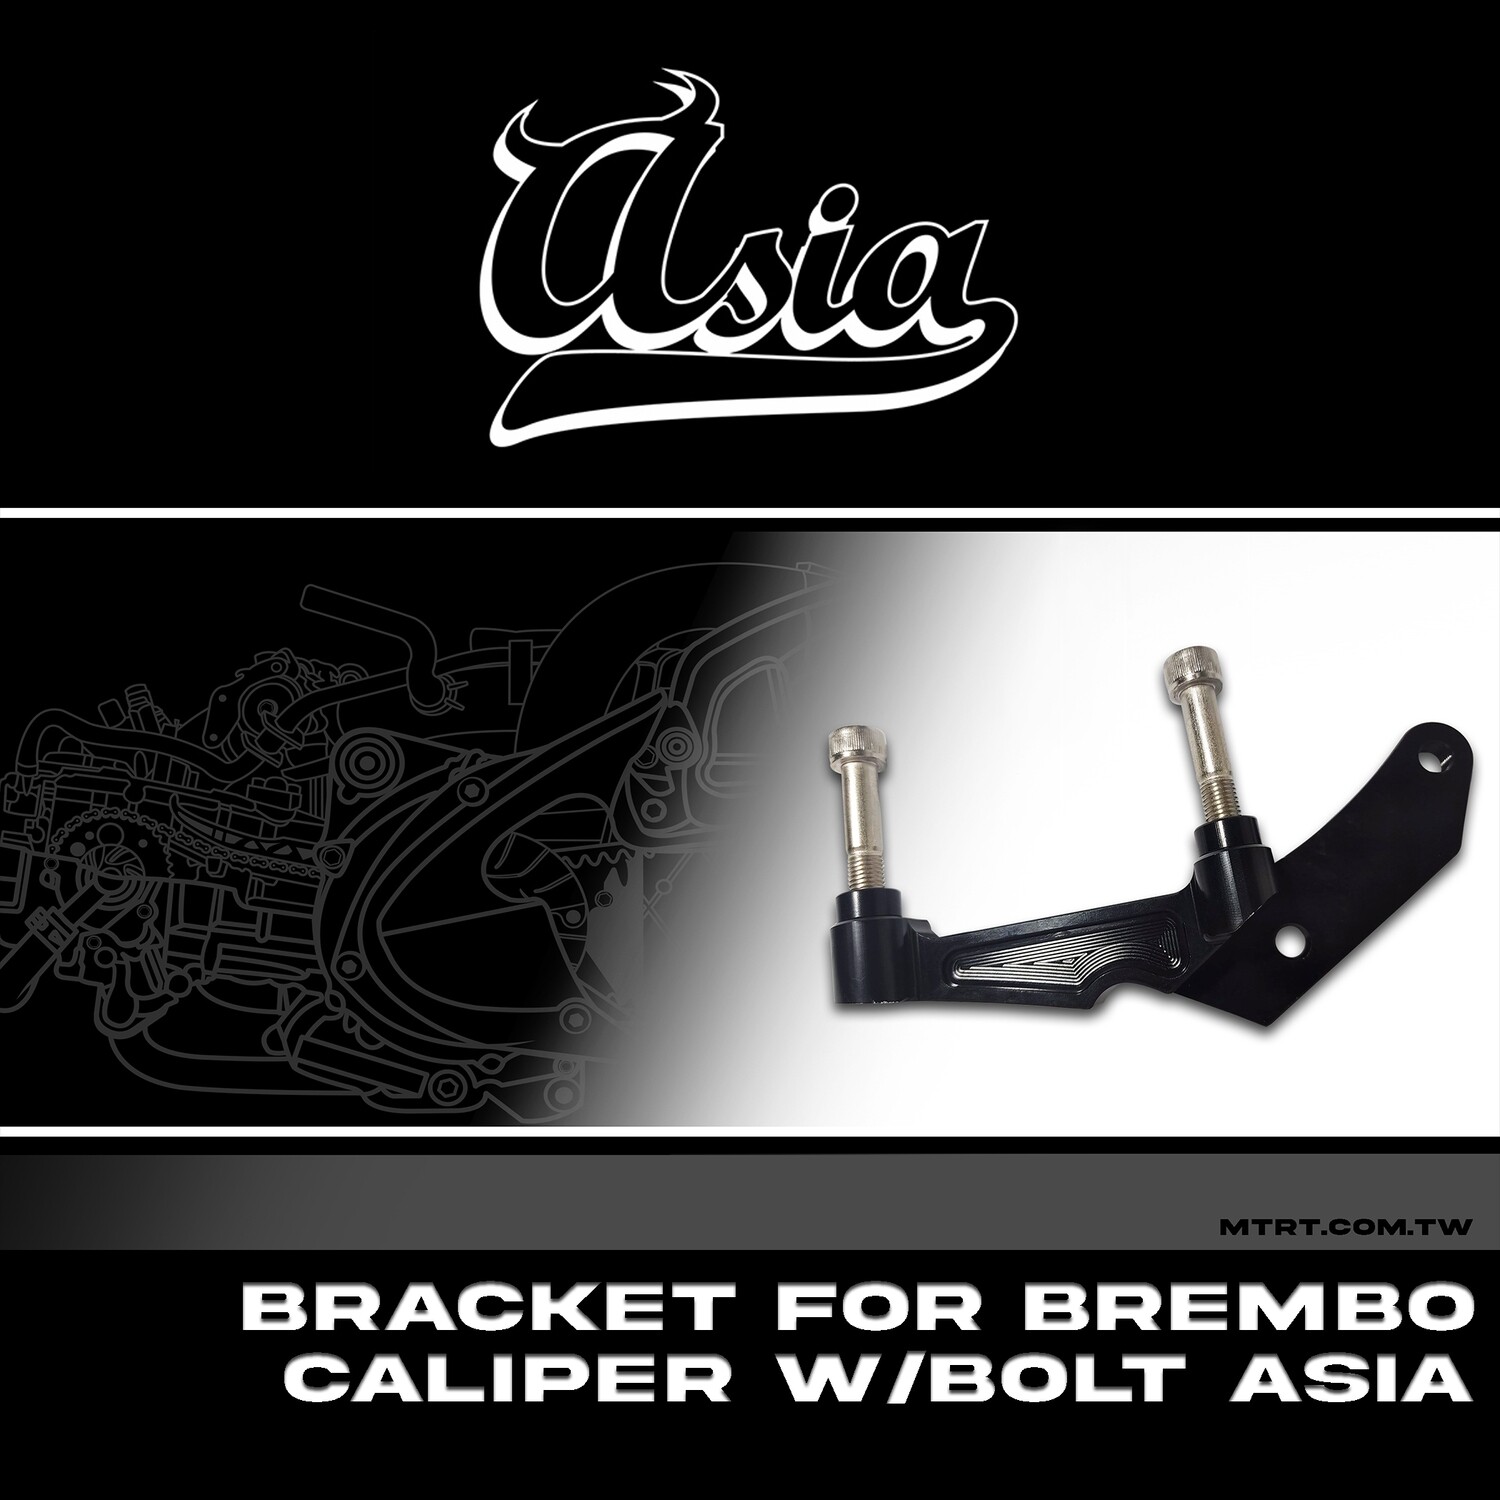 BRACKET FOR BREMBO CALIPER W/BOLT ASIA